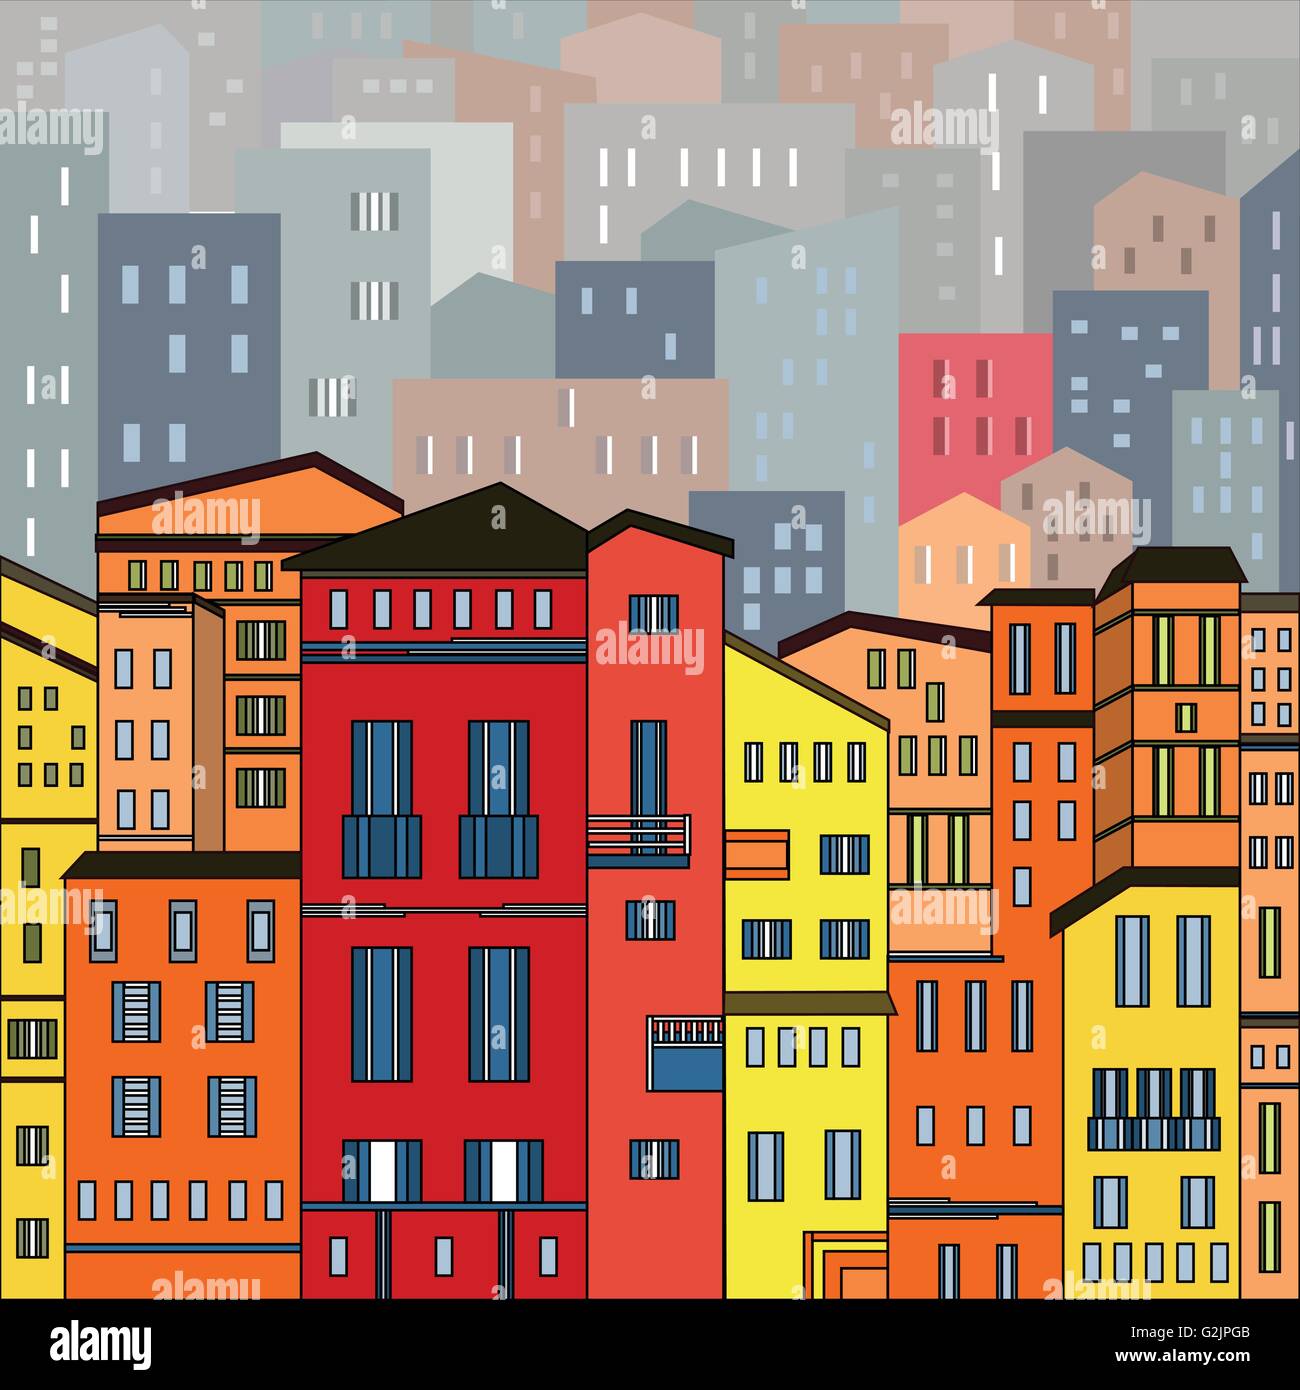 Abstrakte farbige Stadtansicht in Grundzügen mit vielen Häusern und Gebäuden als Einzelstück. Cartoon-Stil. Digitale Vektorgrafik. Stock Vektor